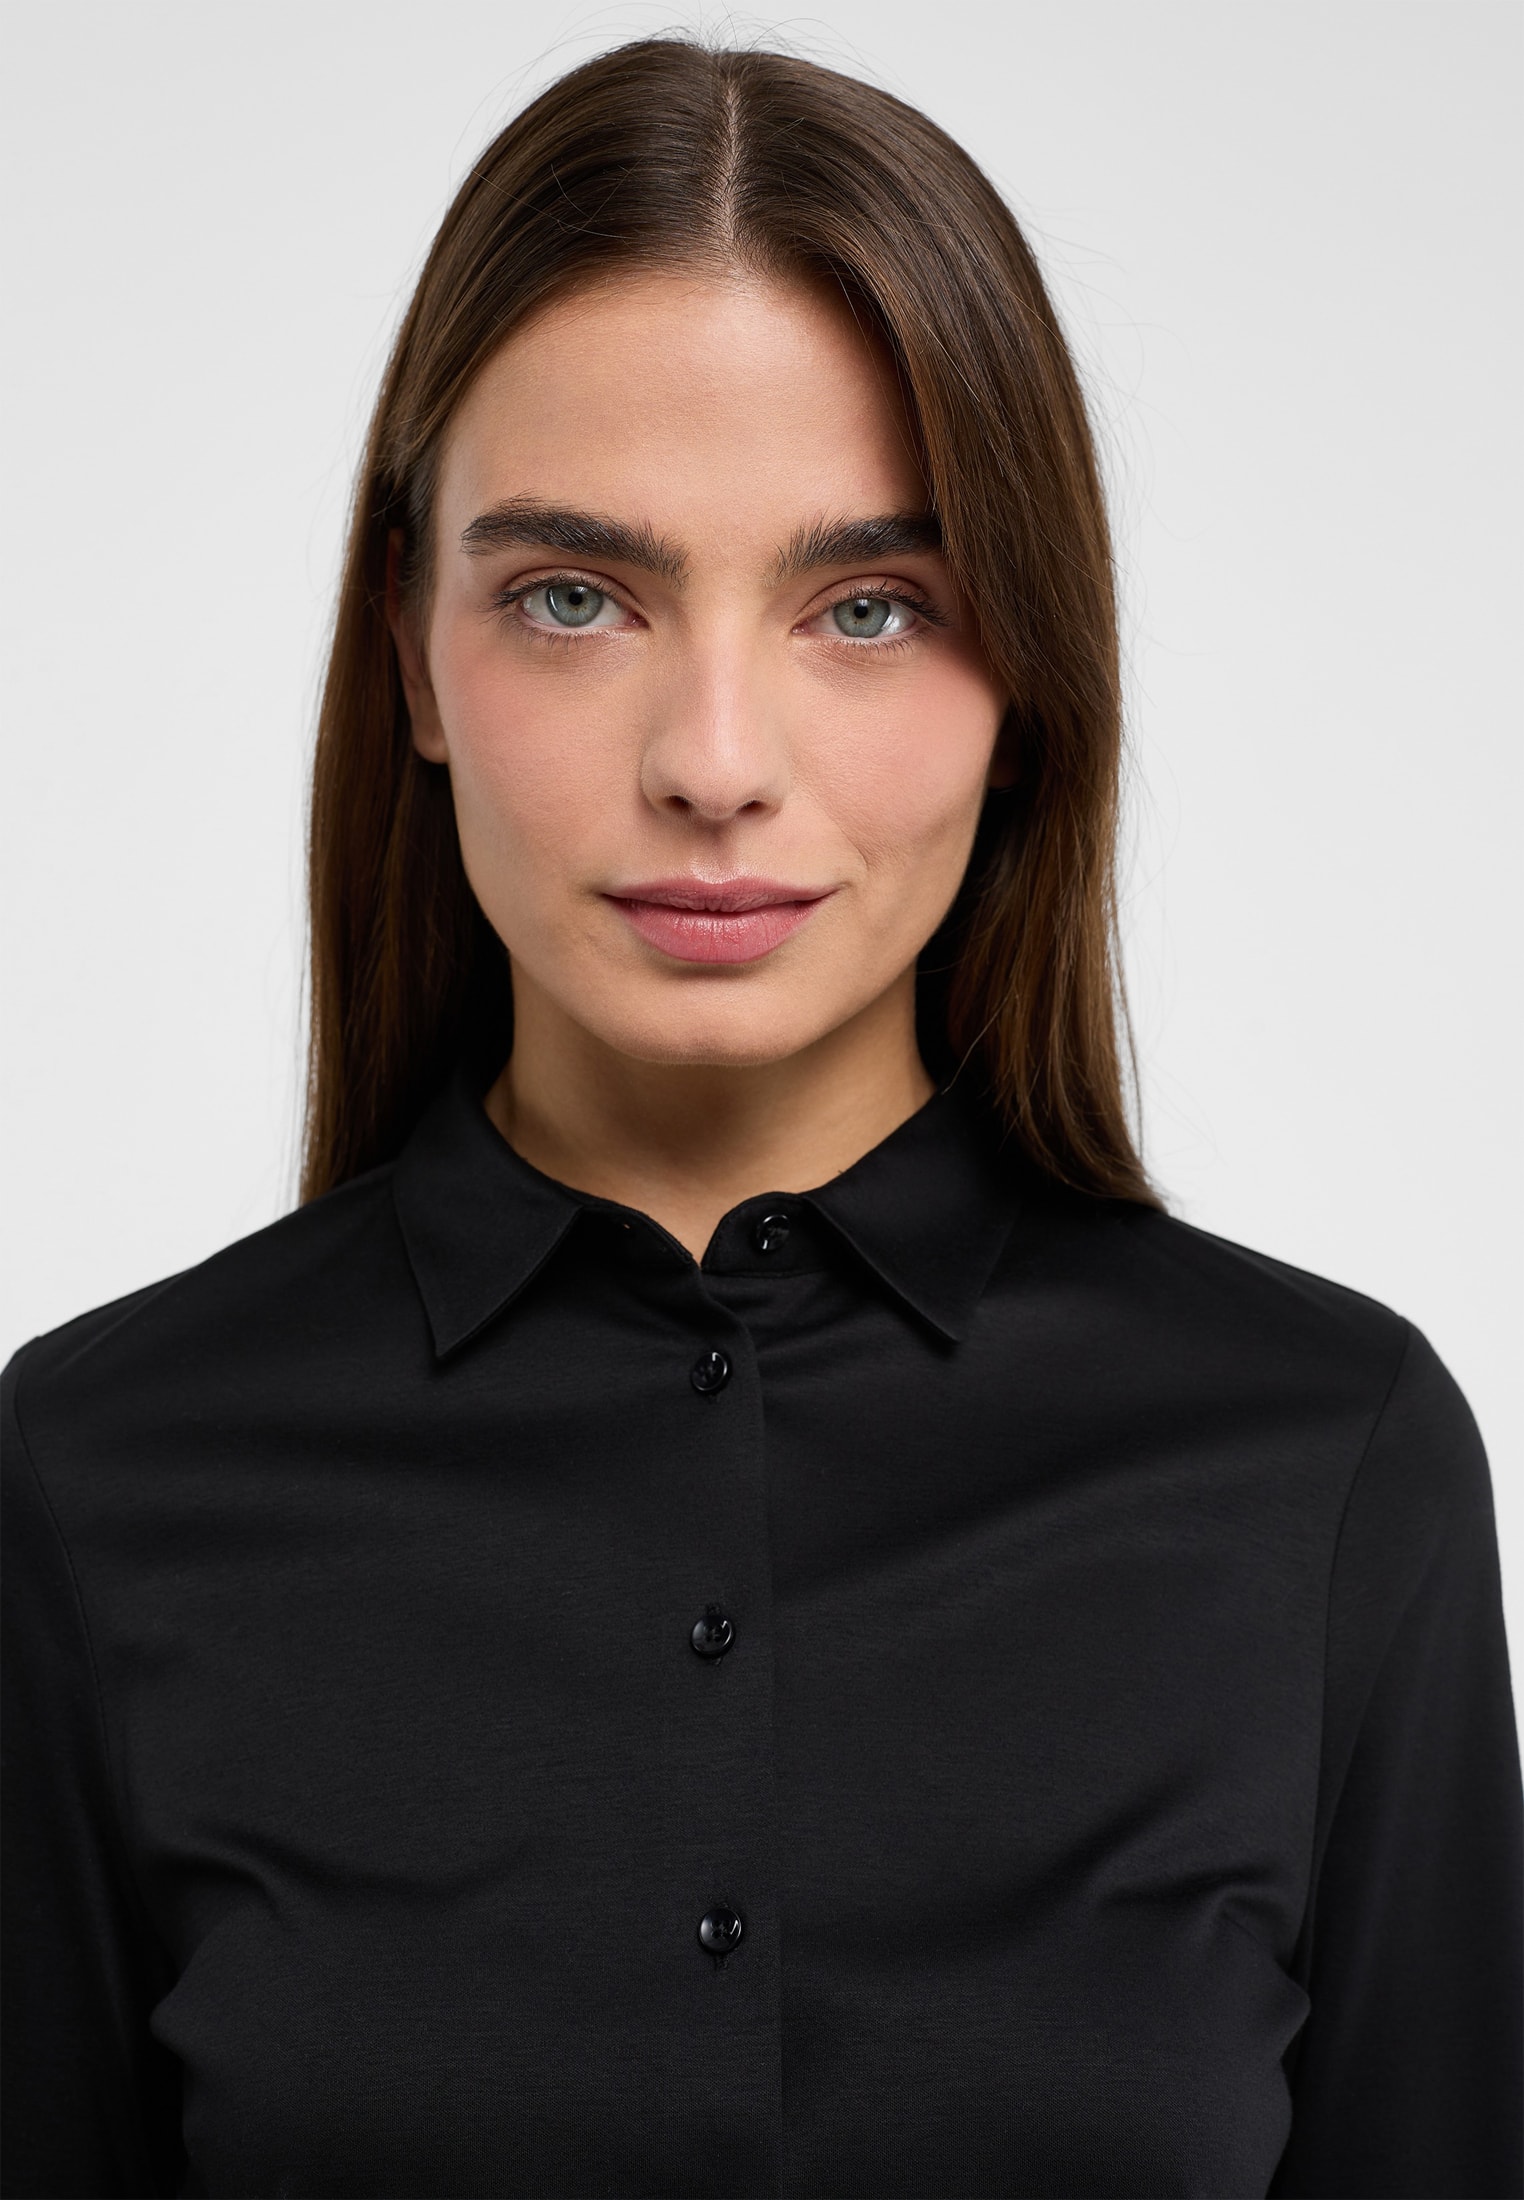 schwarz Bluse | | in schwarz Jersey Shirt | | unifarben Langarm 42 2BL00229-03-91-42-1/1